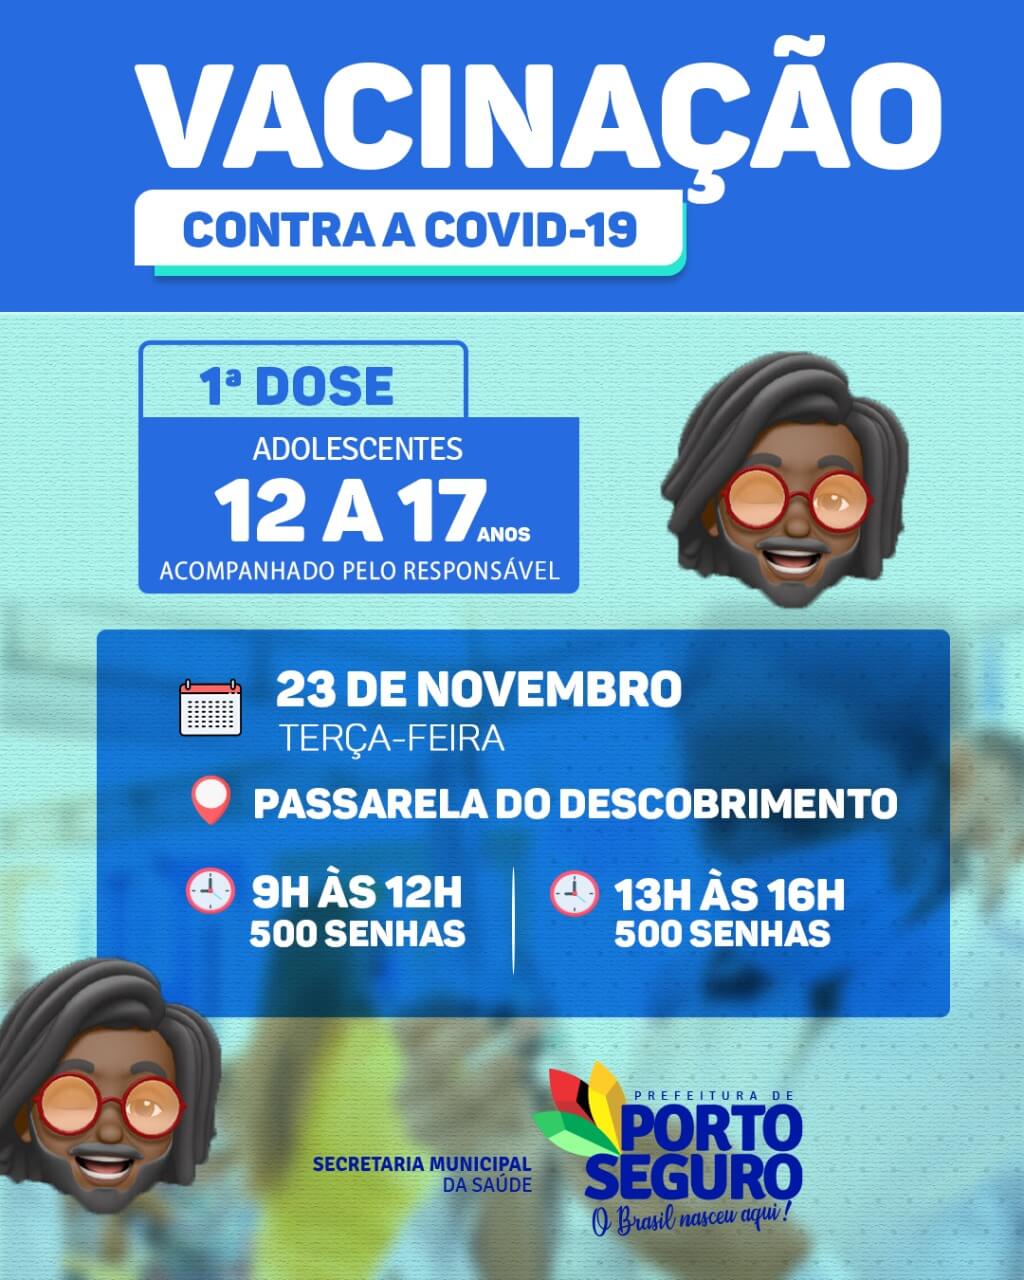 Porto Seguro: Cronograma de Vacinação contra a Covid-19; de 23 de novembro 22